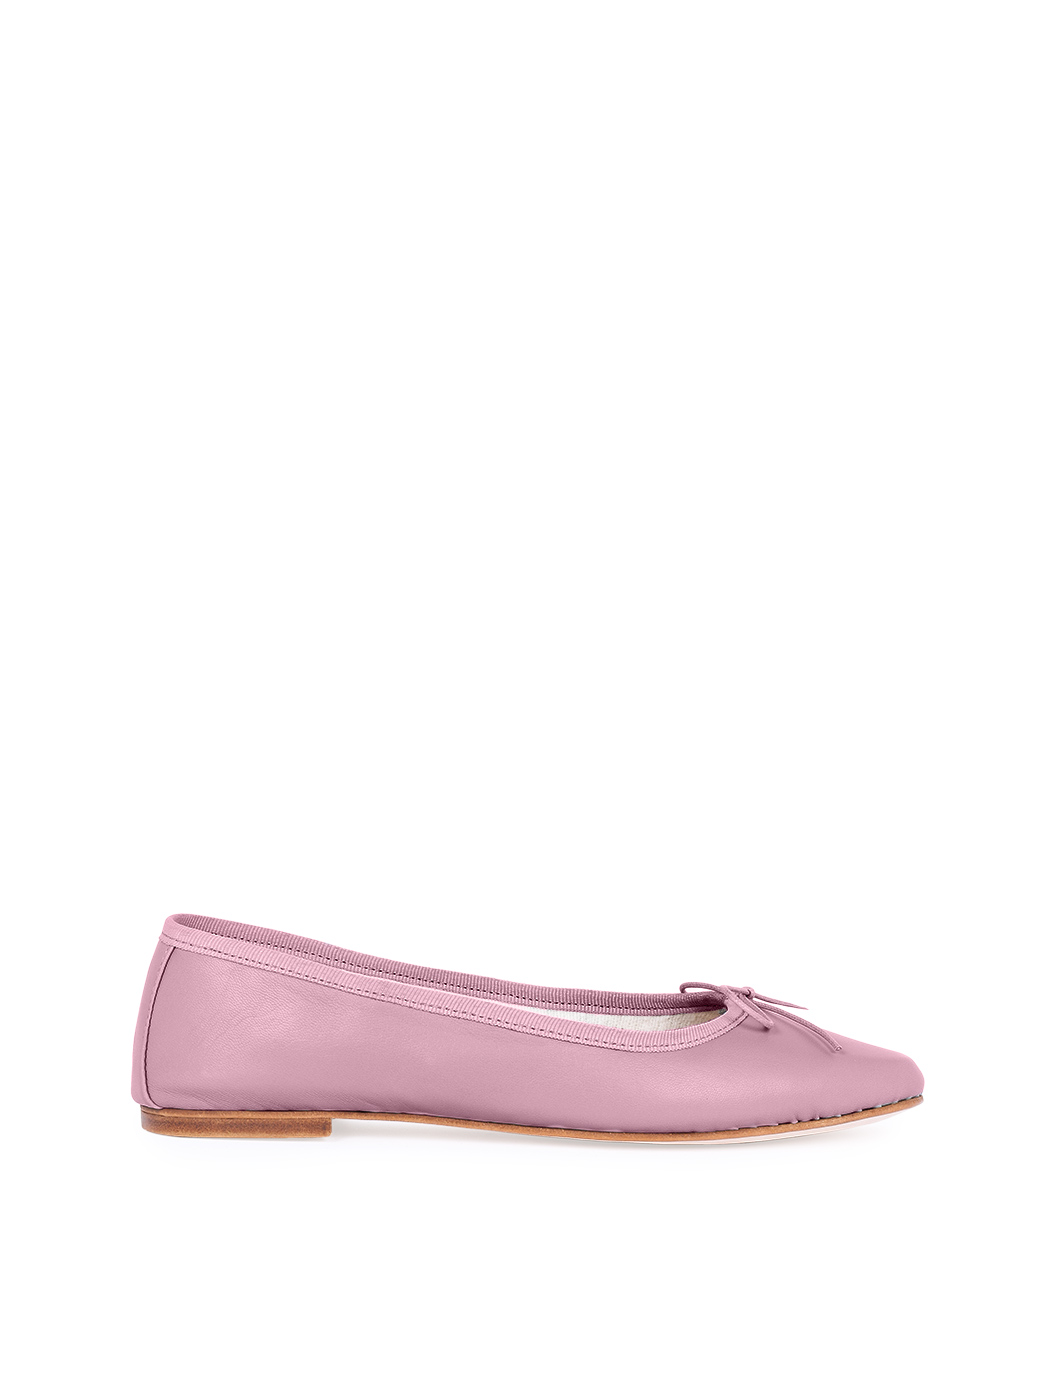 芭蕾平底鞋 - 古典粉色 麂皮古典粉